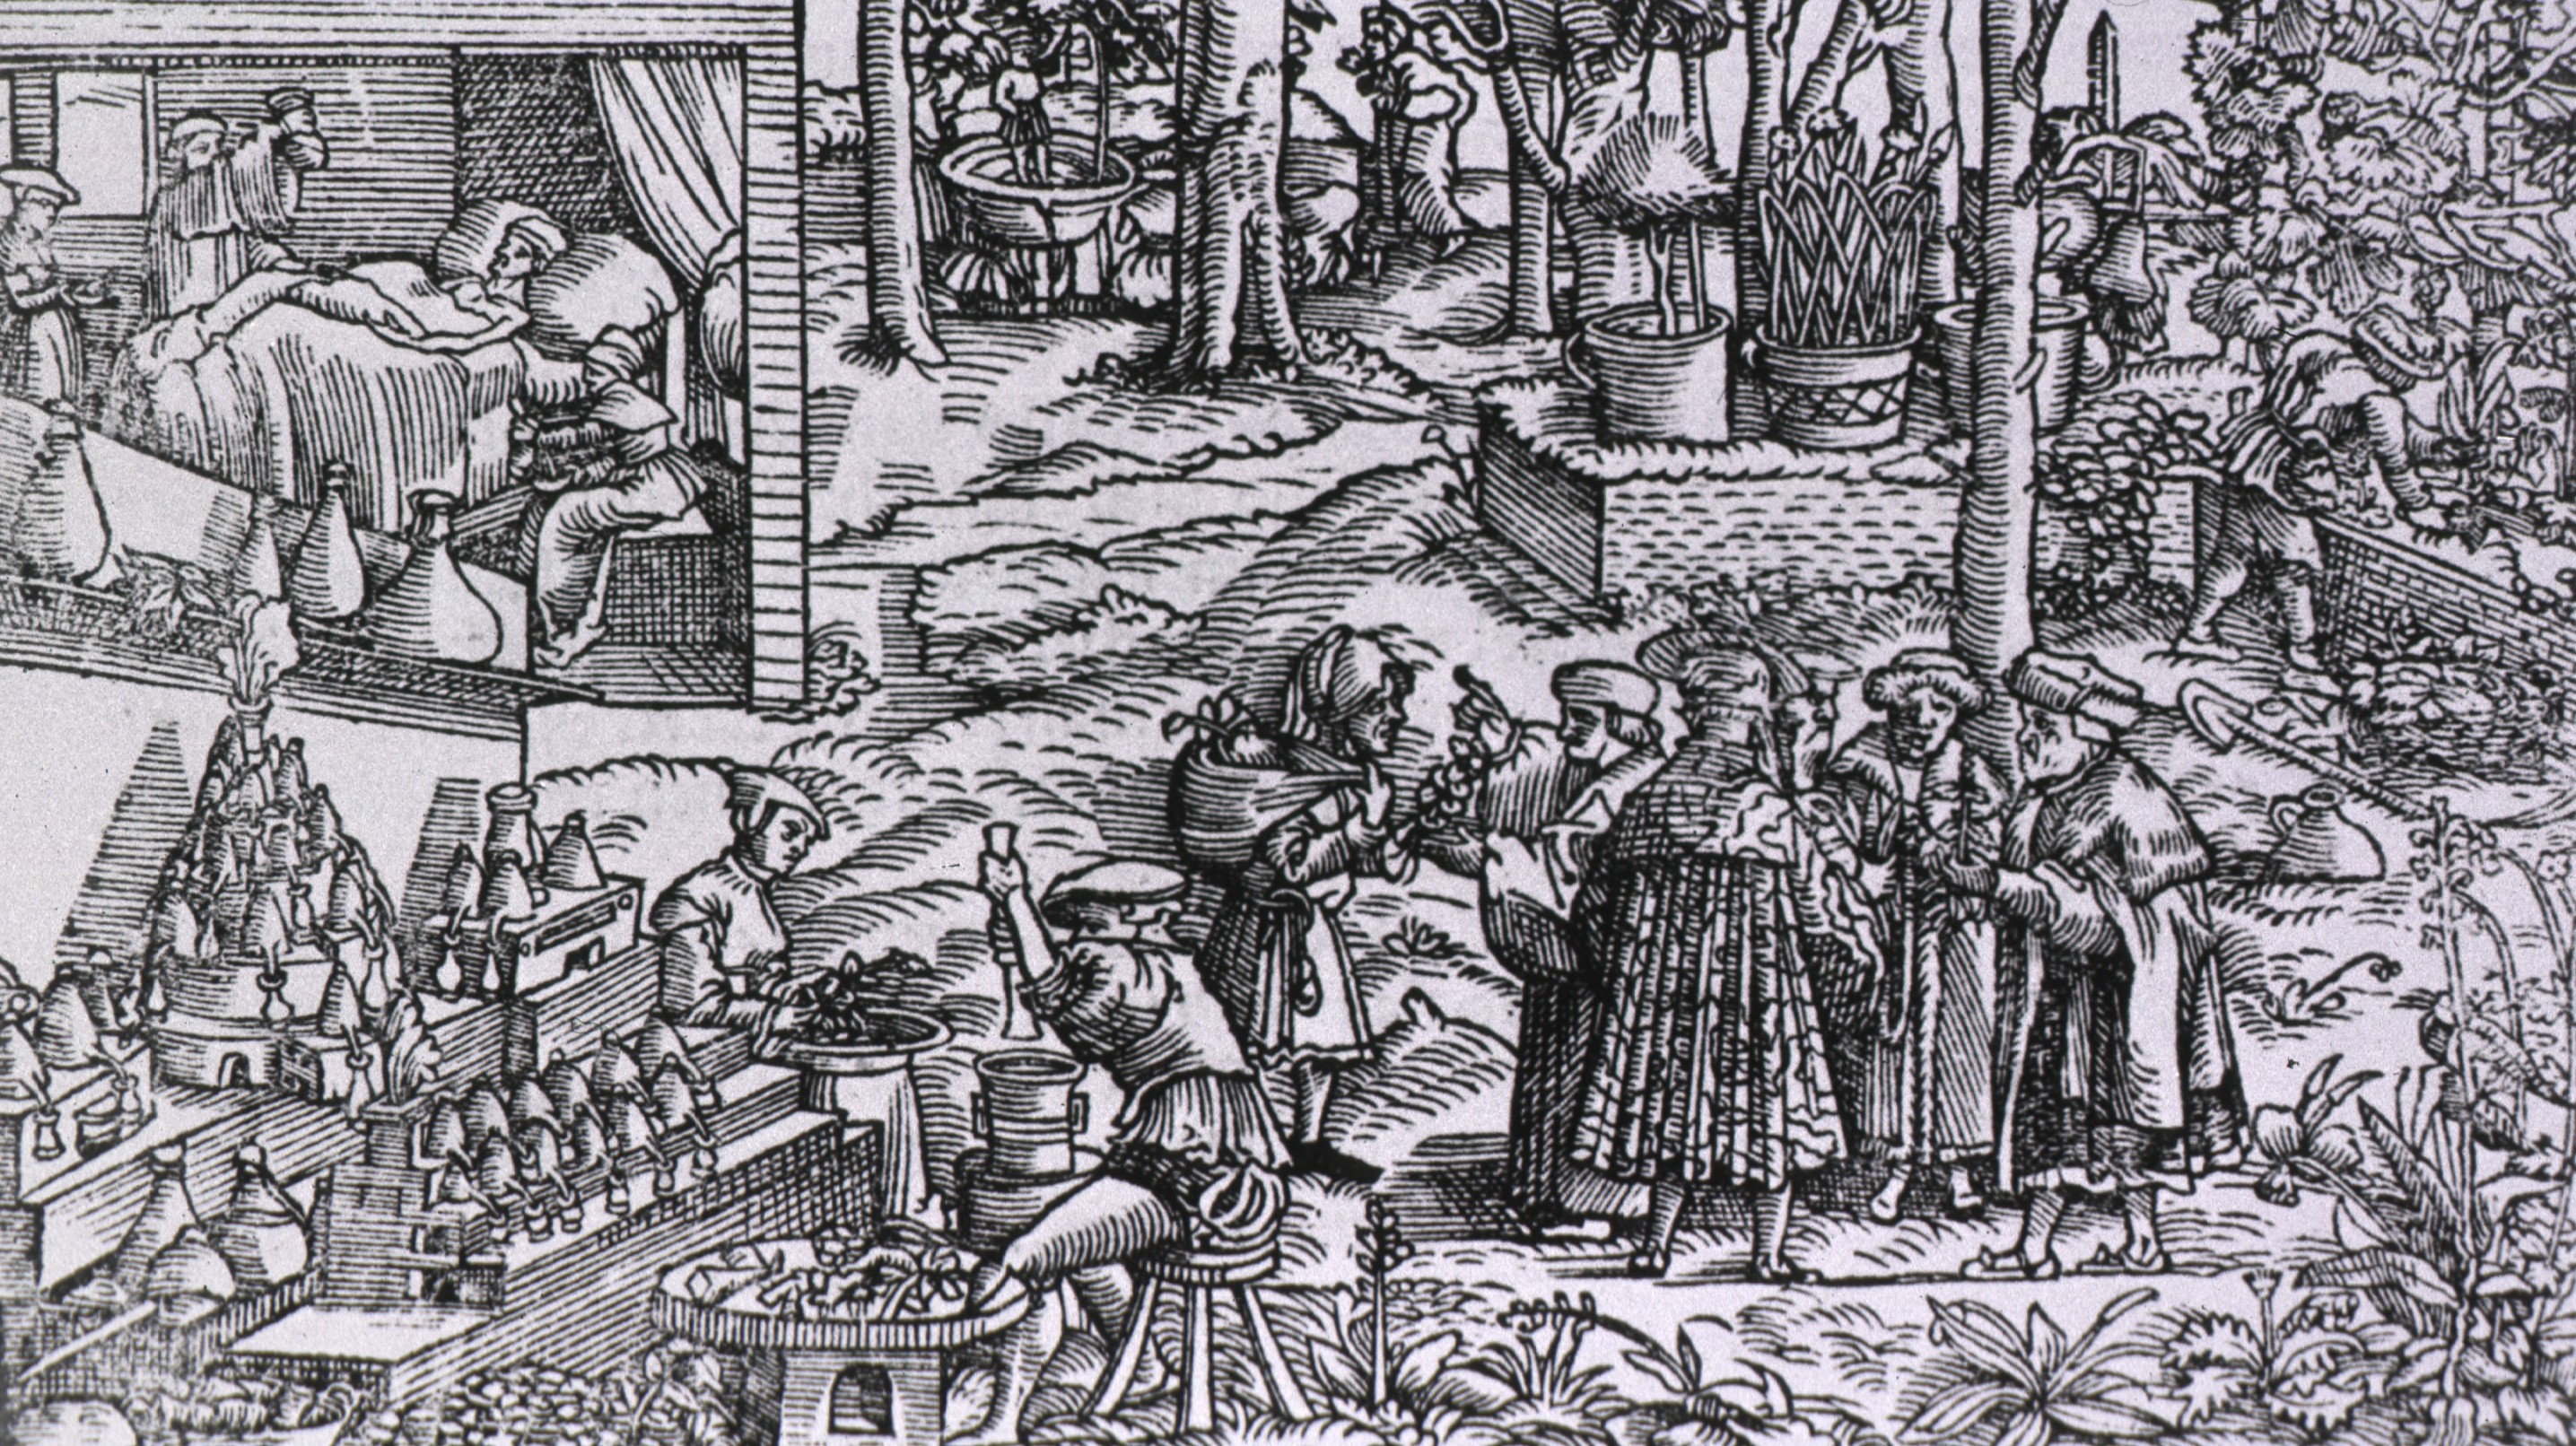 semmelweismuseum.blog.hu-Egy 16. századból fennmaradt német nyelvű kalendárium részlete, amelynek bal felső sarkában egy vizeletvizsgálat jelenete látható. Ettől jobbra gyógynövénytermesztés, a kép középpontjában pedig konzultációt folytató orvosok láthatók